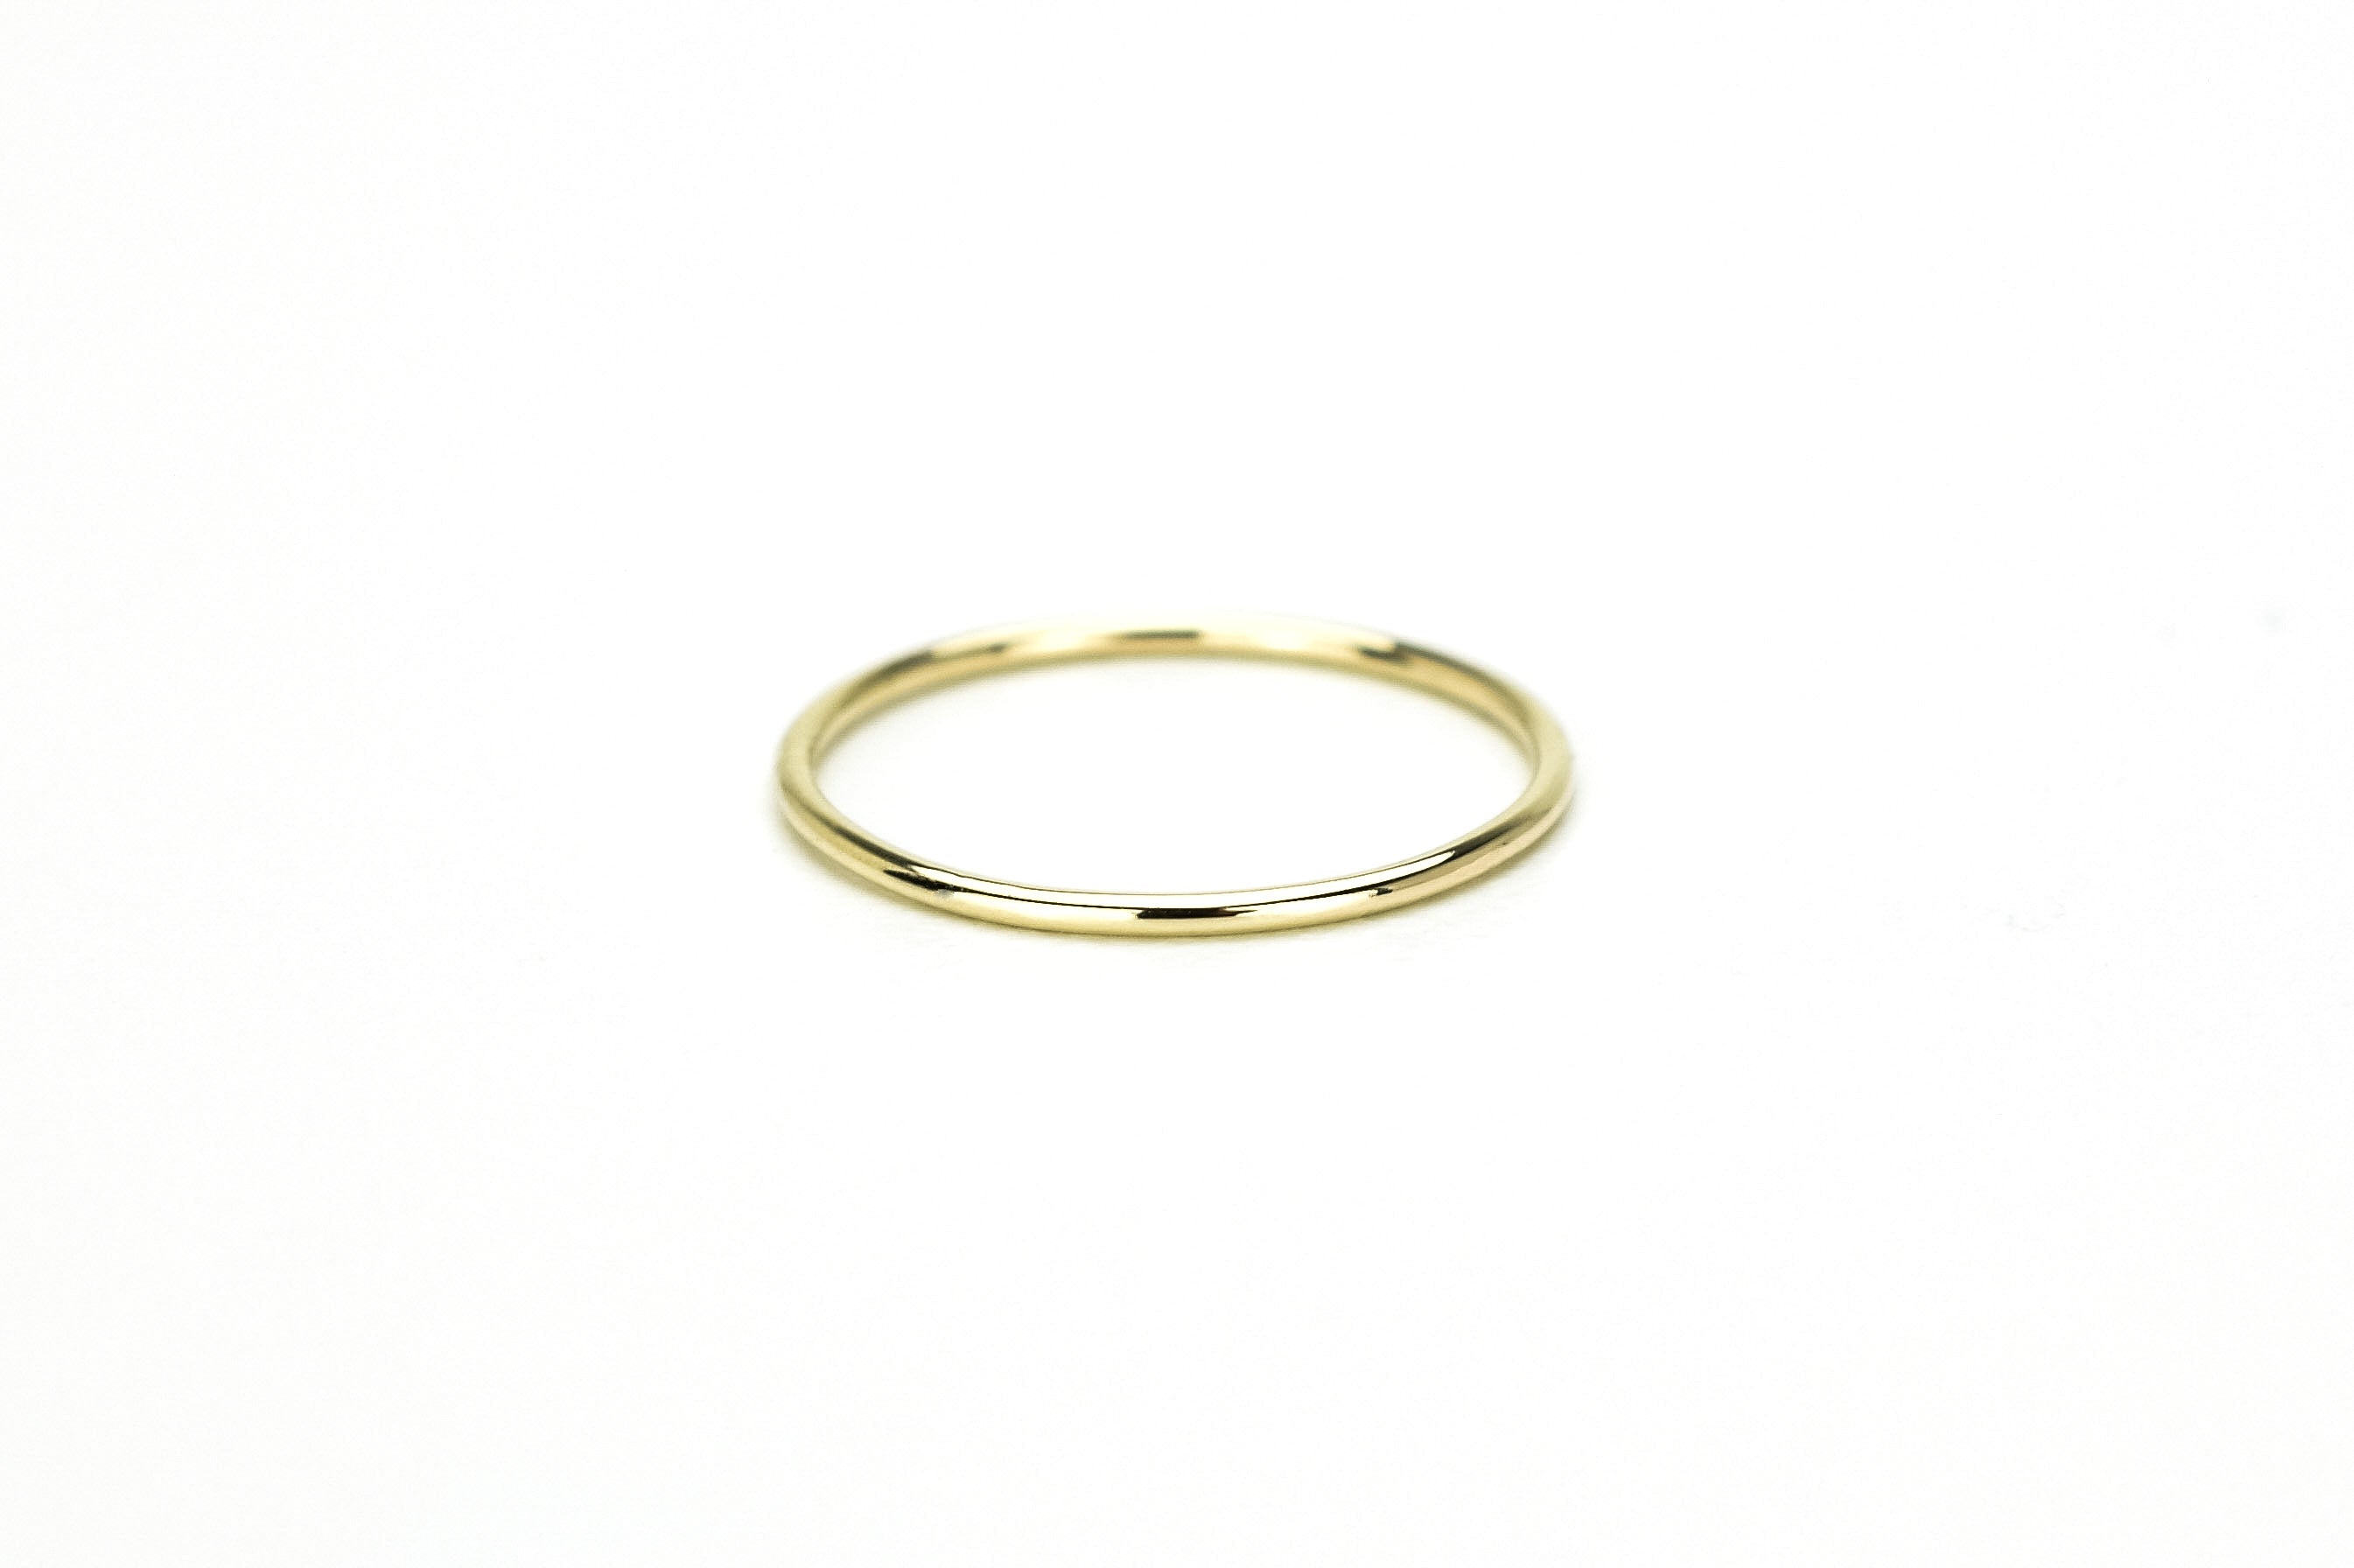 Aanschuifring, ronde ring, 14k gouden ring, subtiele ring, 14k ring, 585 gouden ring, gepolijste ring